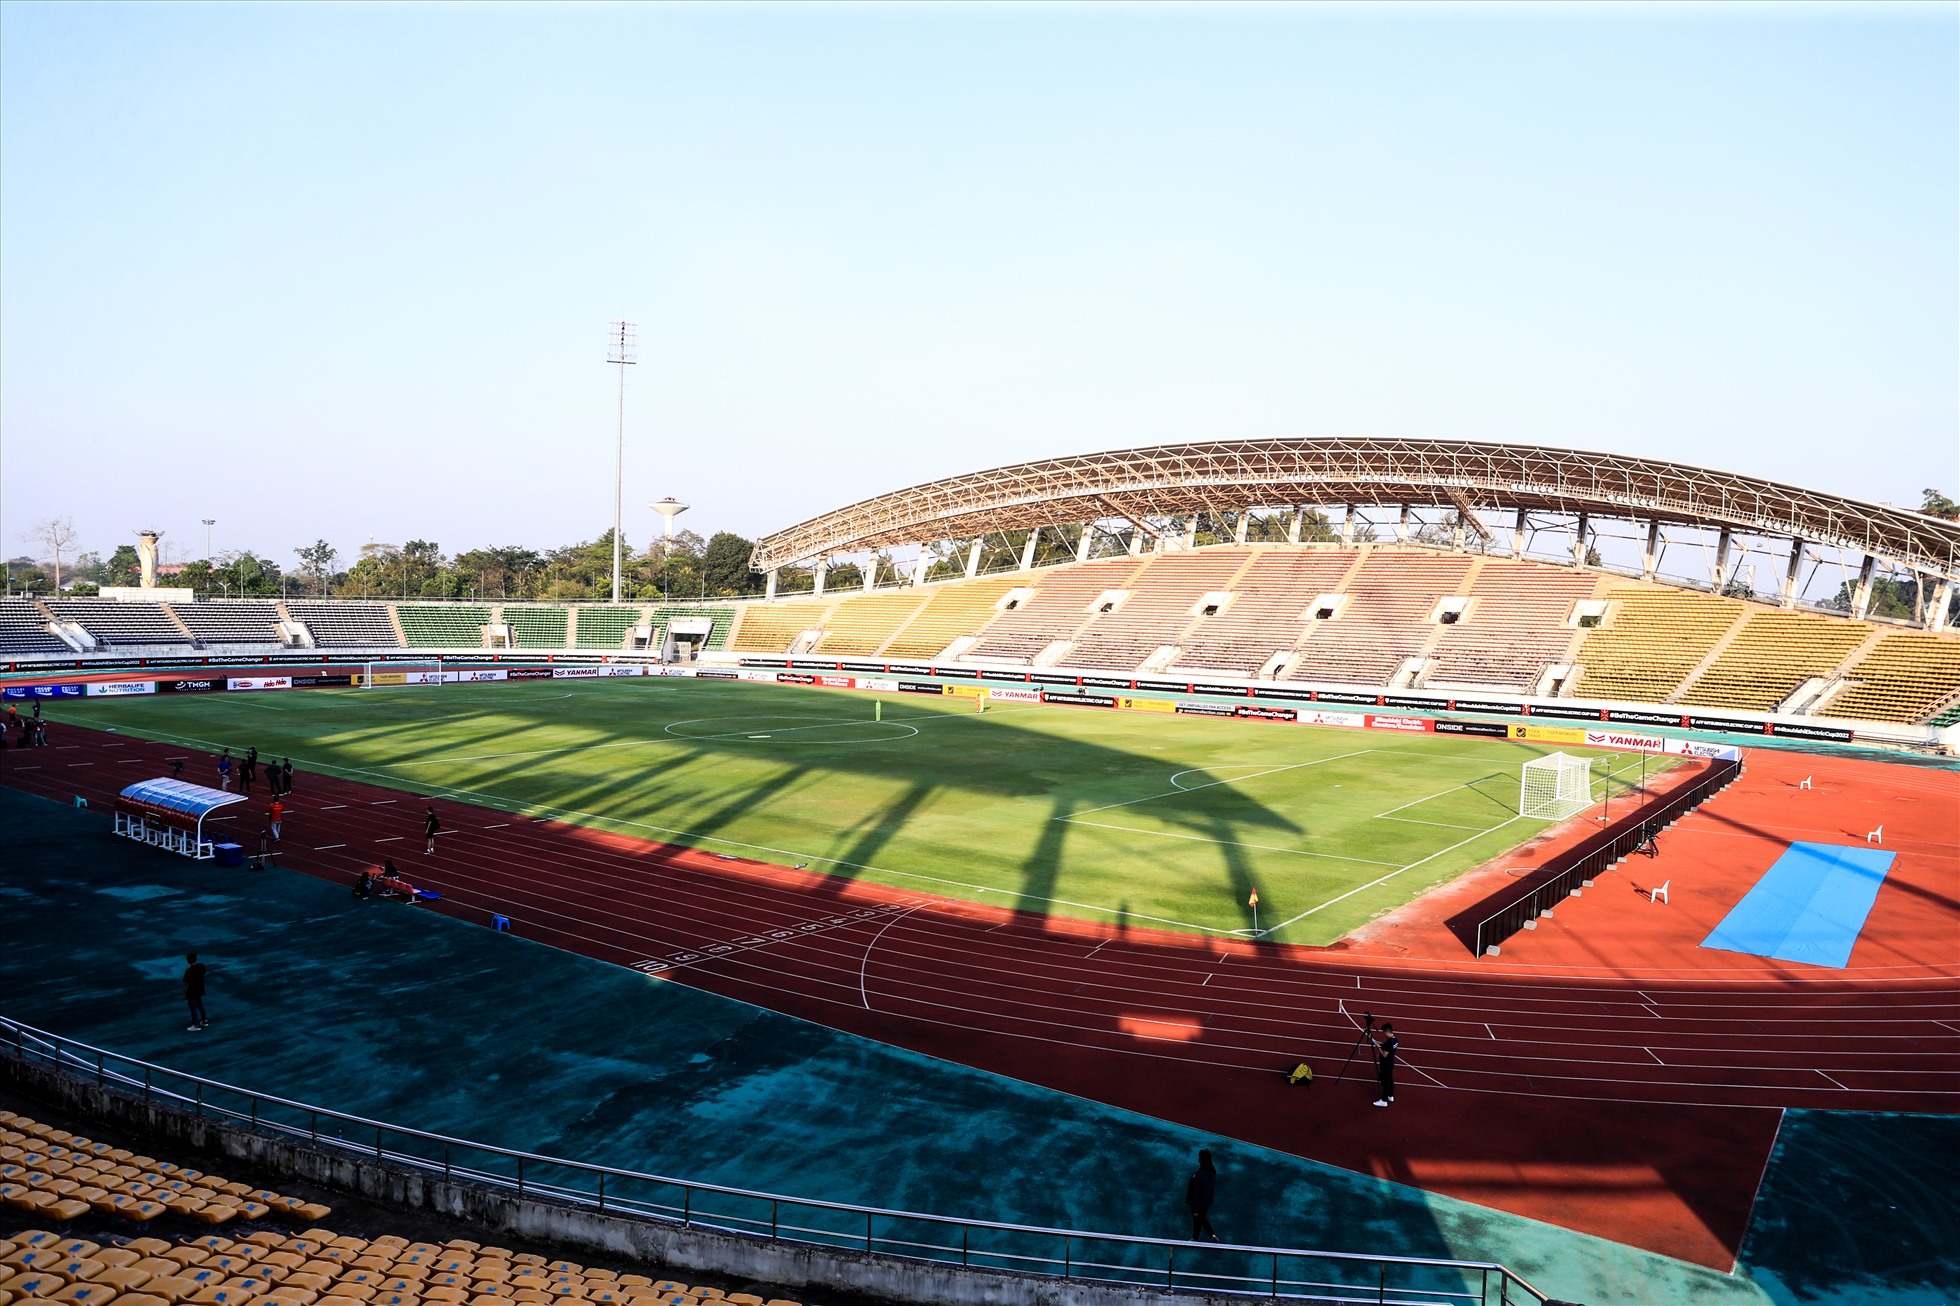 Dù vậy, bên trong sân vận động, thảm cỏ được chăm sóc khá kỹ lưỡng chuẩn bị cho trận mở màn AFF Cup 2022 giữa đội tuyển Lào và Việt Nam.